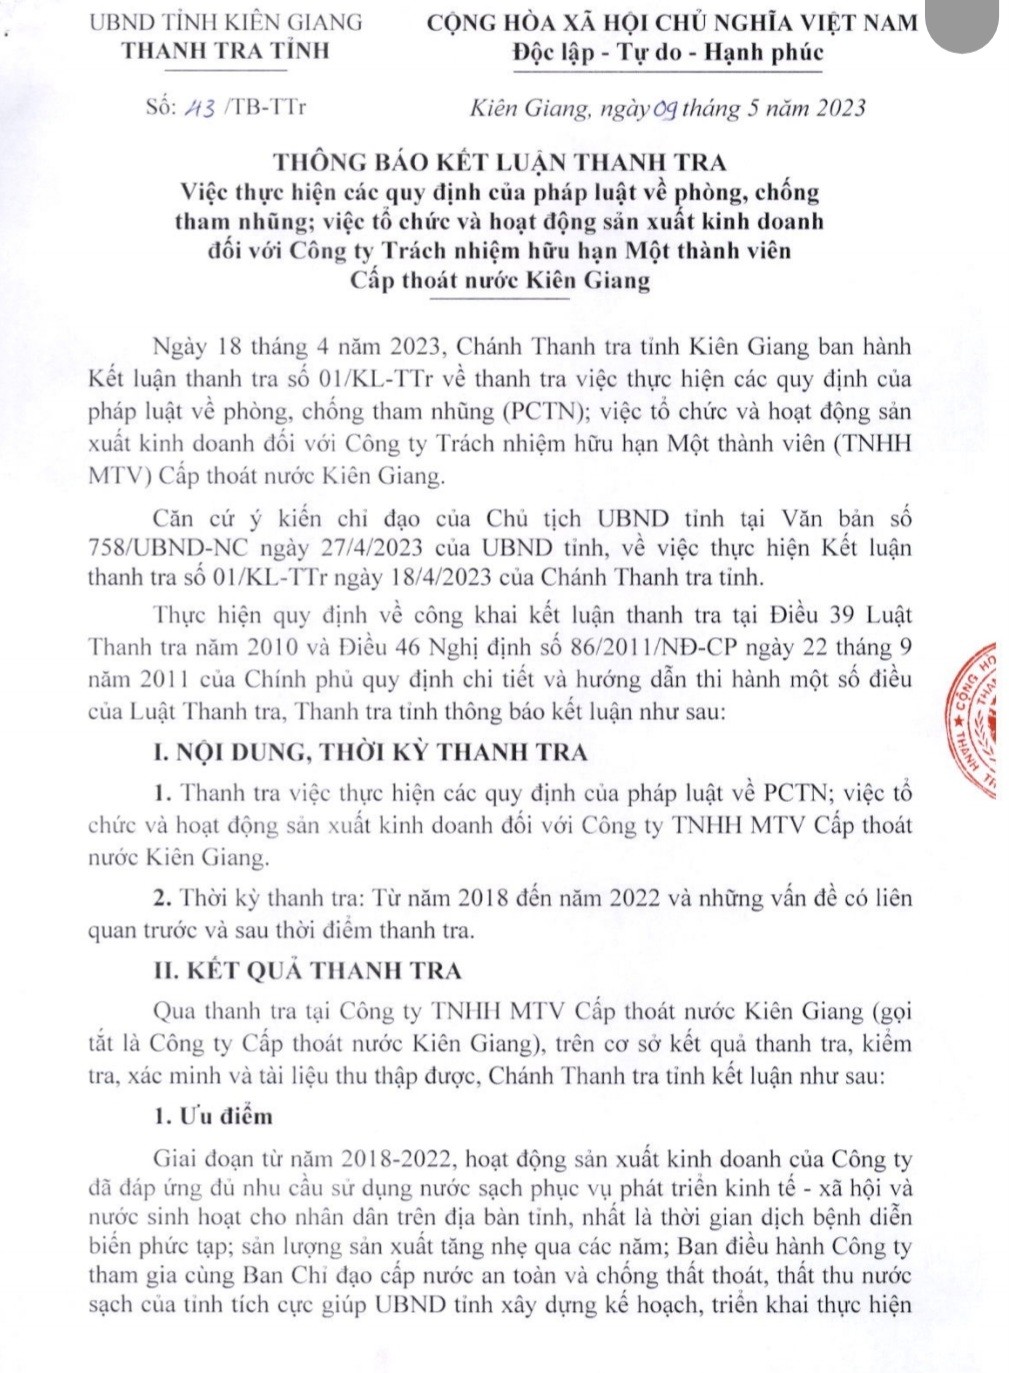 Thông báo kết luận thanh tra của Thanh tra tỉnh Kiên Giang